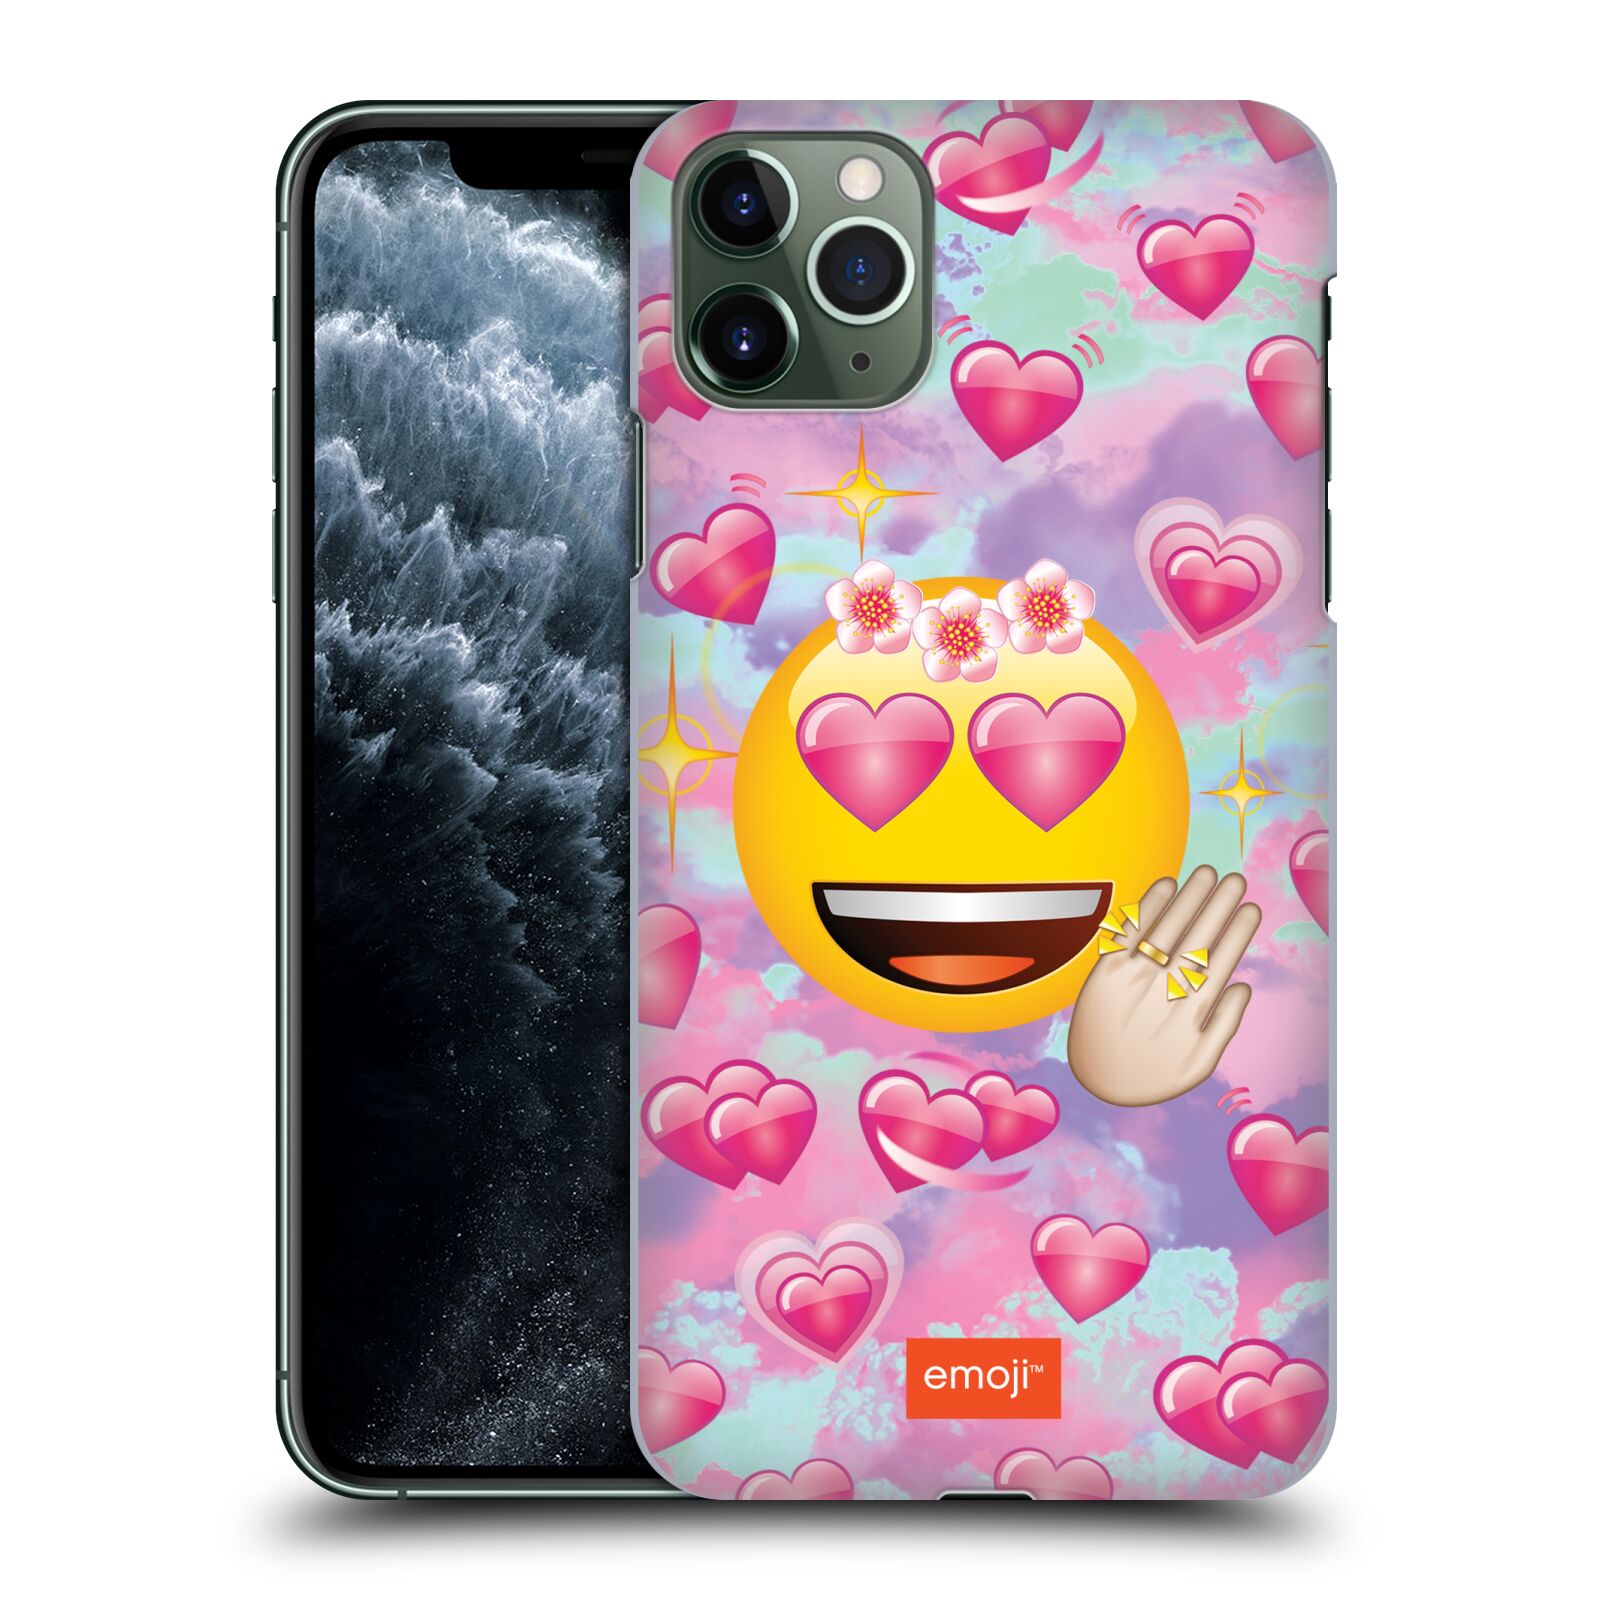 Pouzdro na mobil Apple Iphone 11 PRO MAX - HEAD CASE - smajlík oficiální kryt EMOJI velký smajlík růžová srdíčka